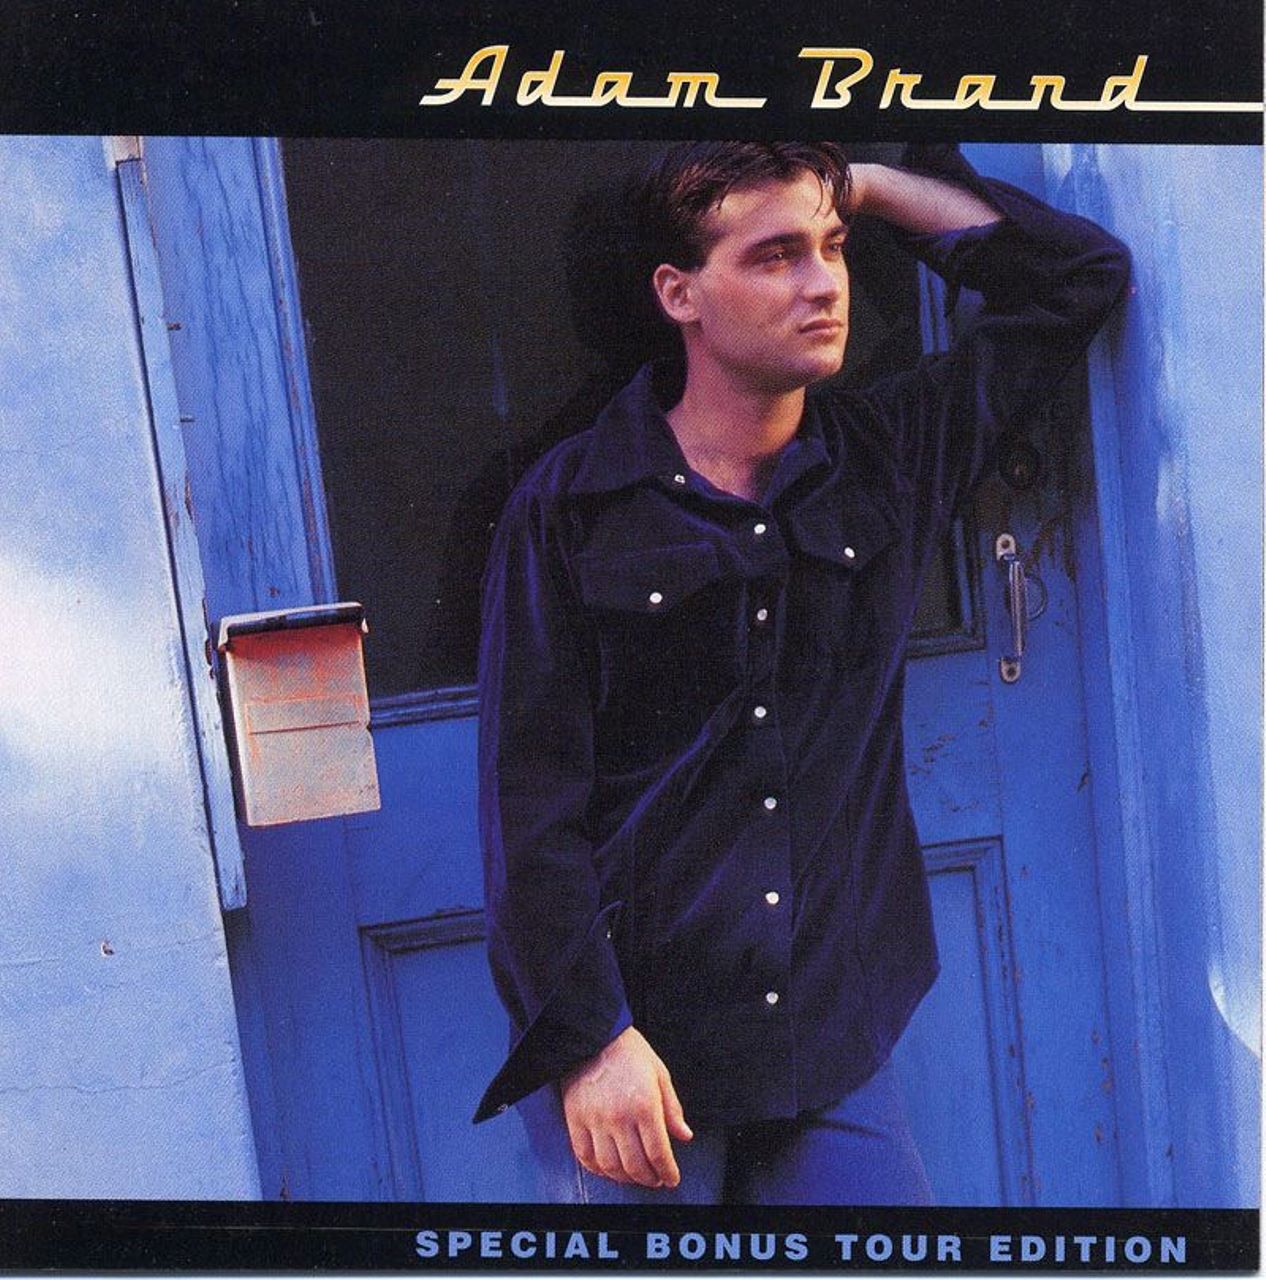 Adam Brand - Adam Brand cover album